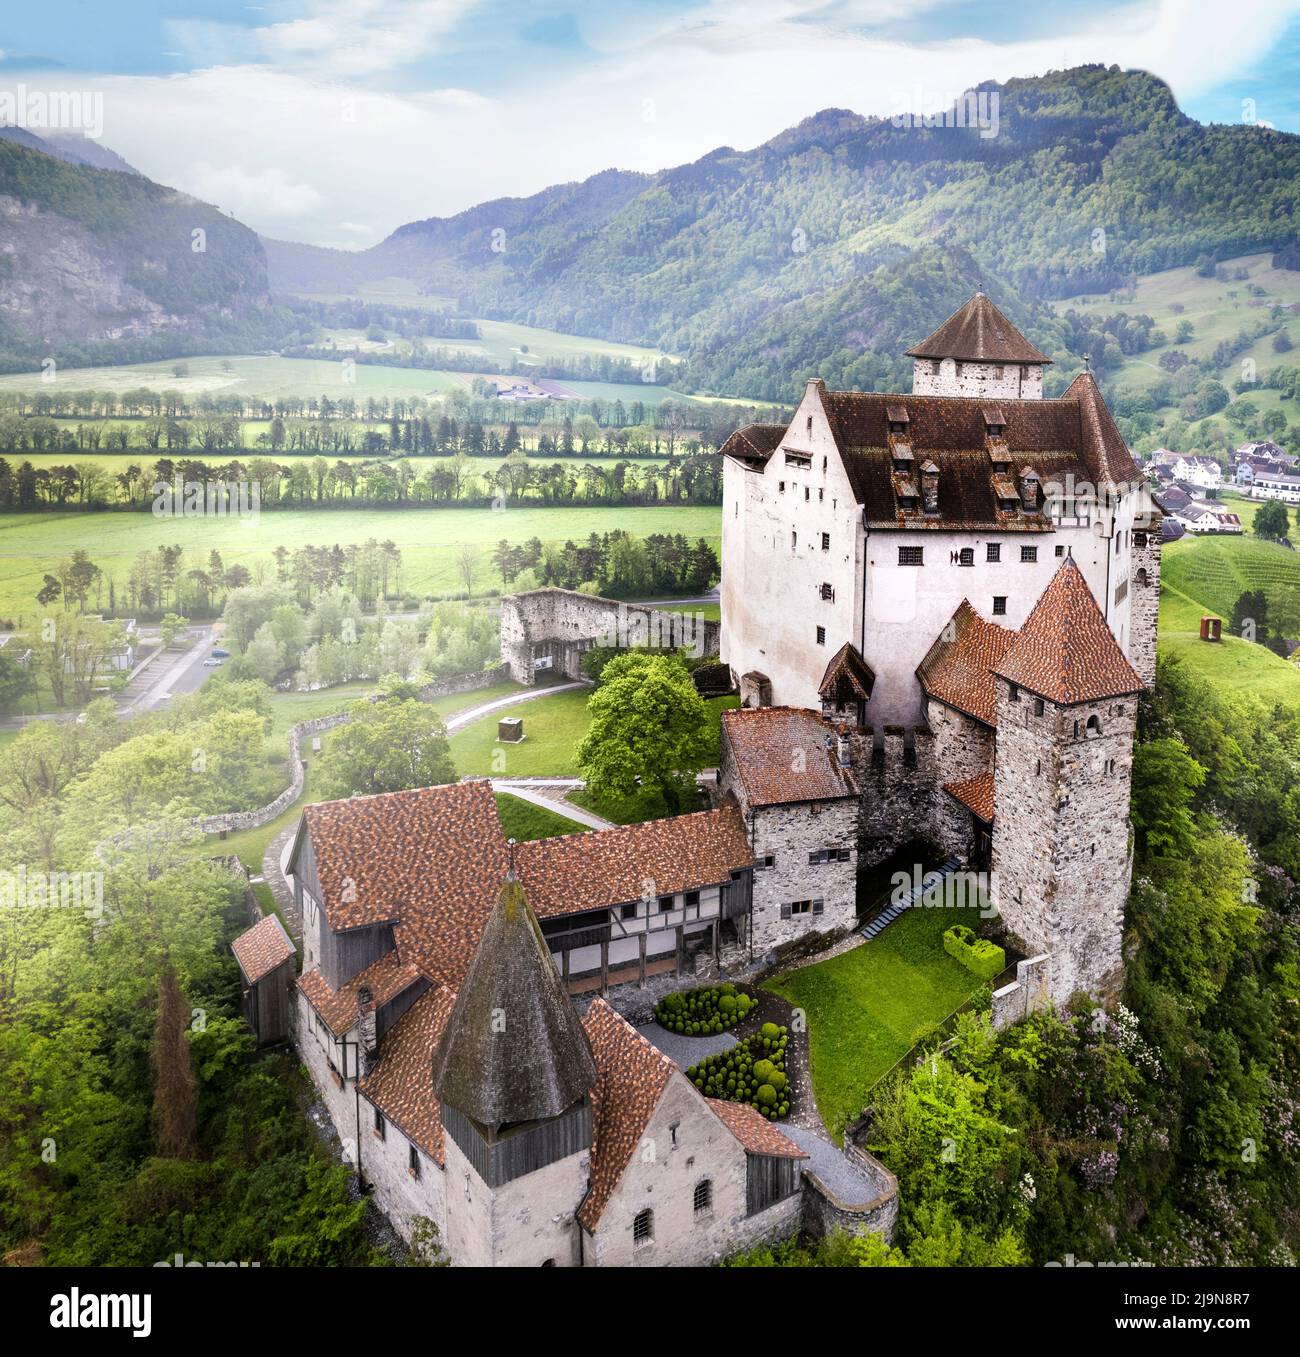 Hermosos castillos medievales de Europa - Gutenberg impresionante en Liechtenstein, frontera con Suiza, rodeado de montañas de los Alpes, vista aérea Foto de stock